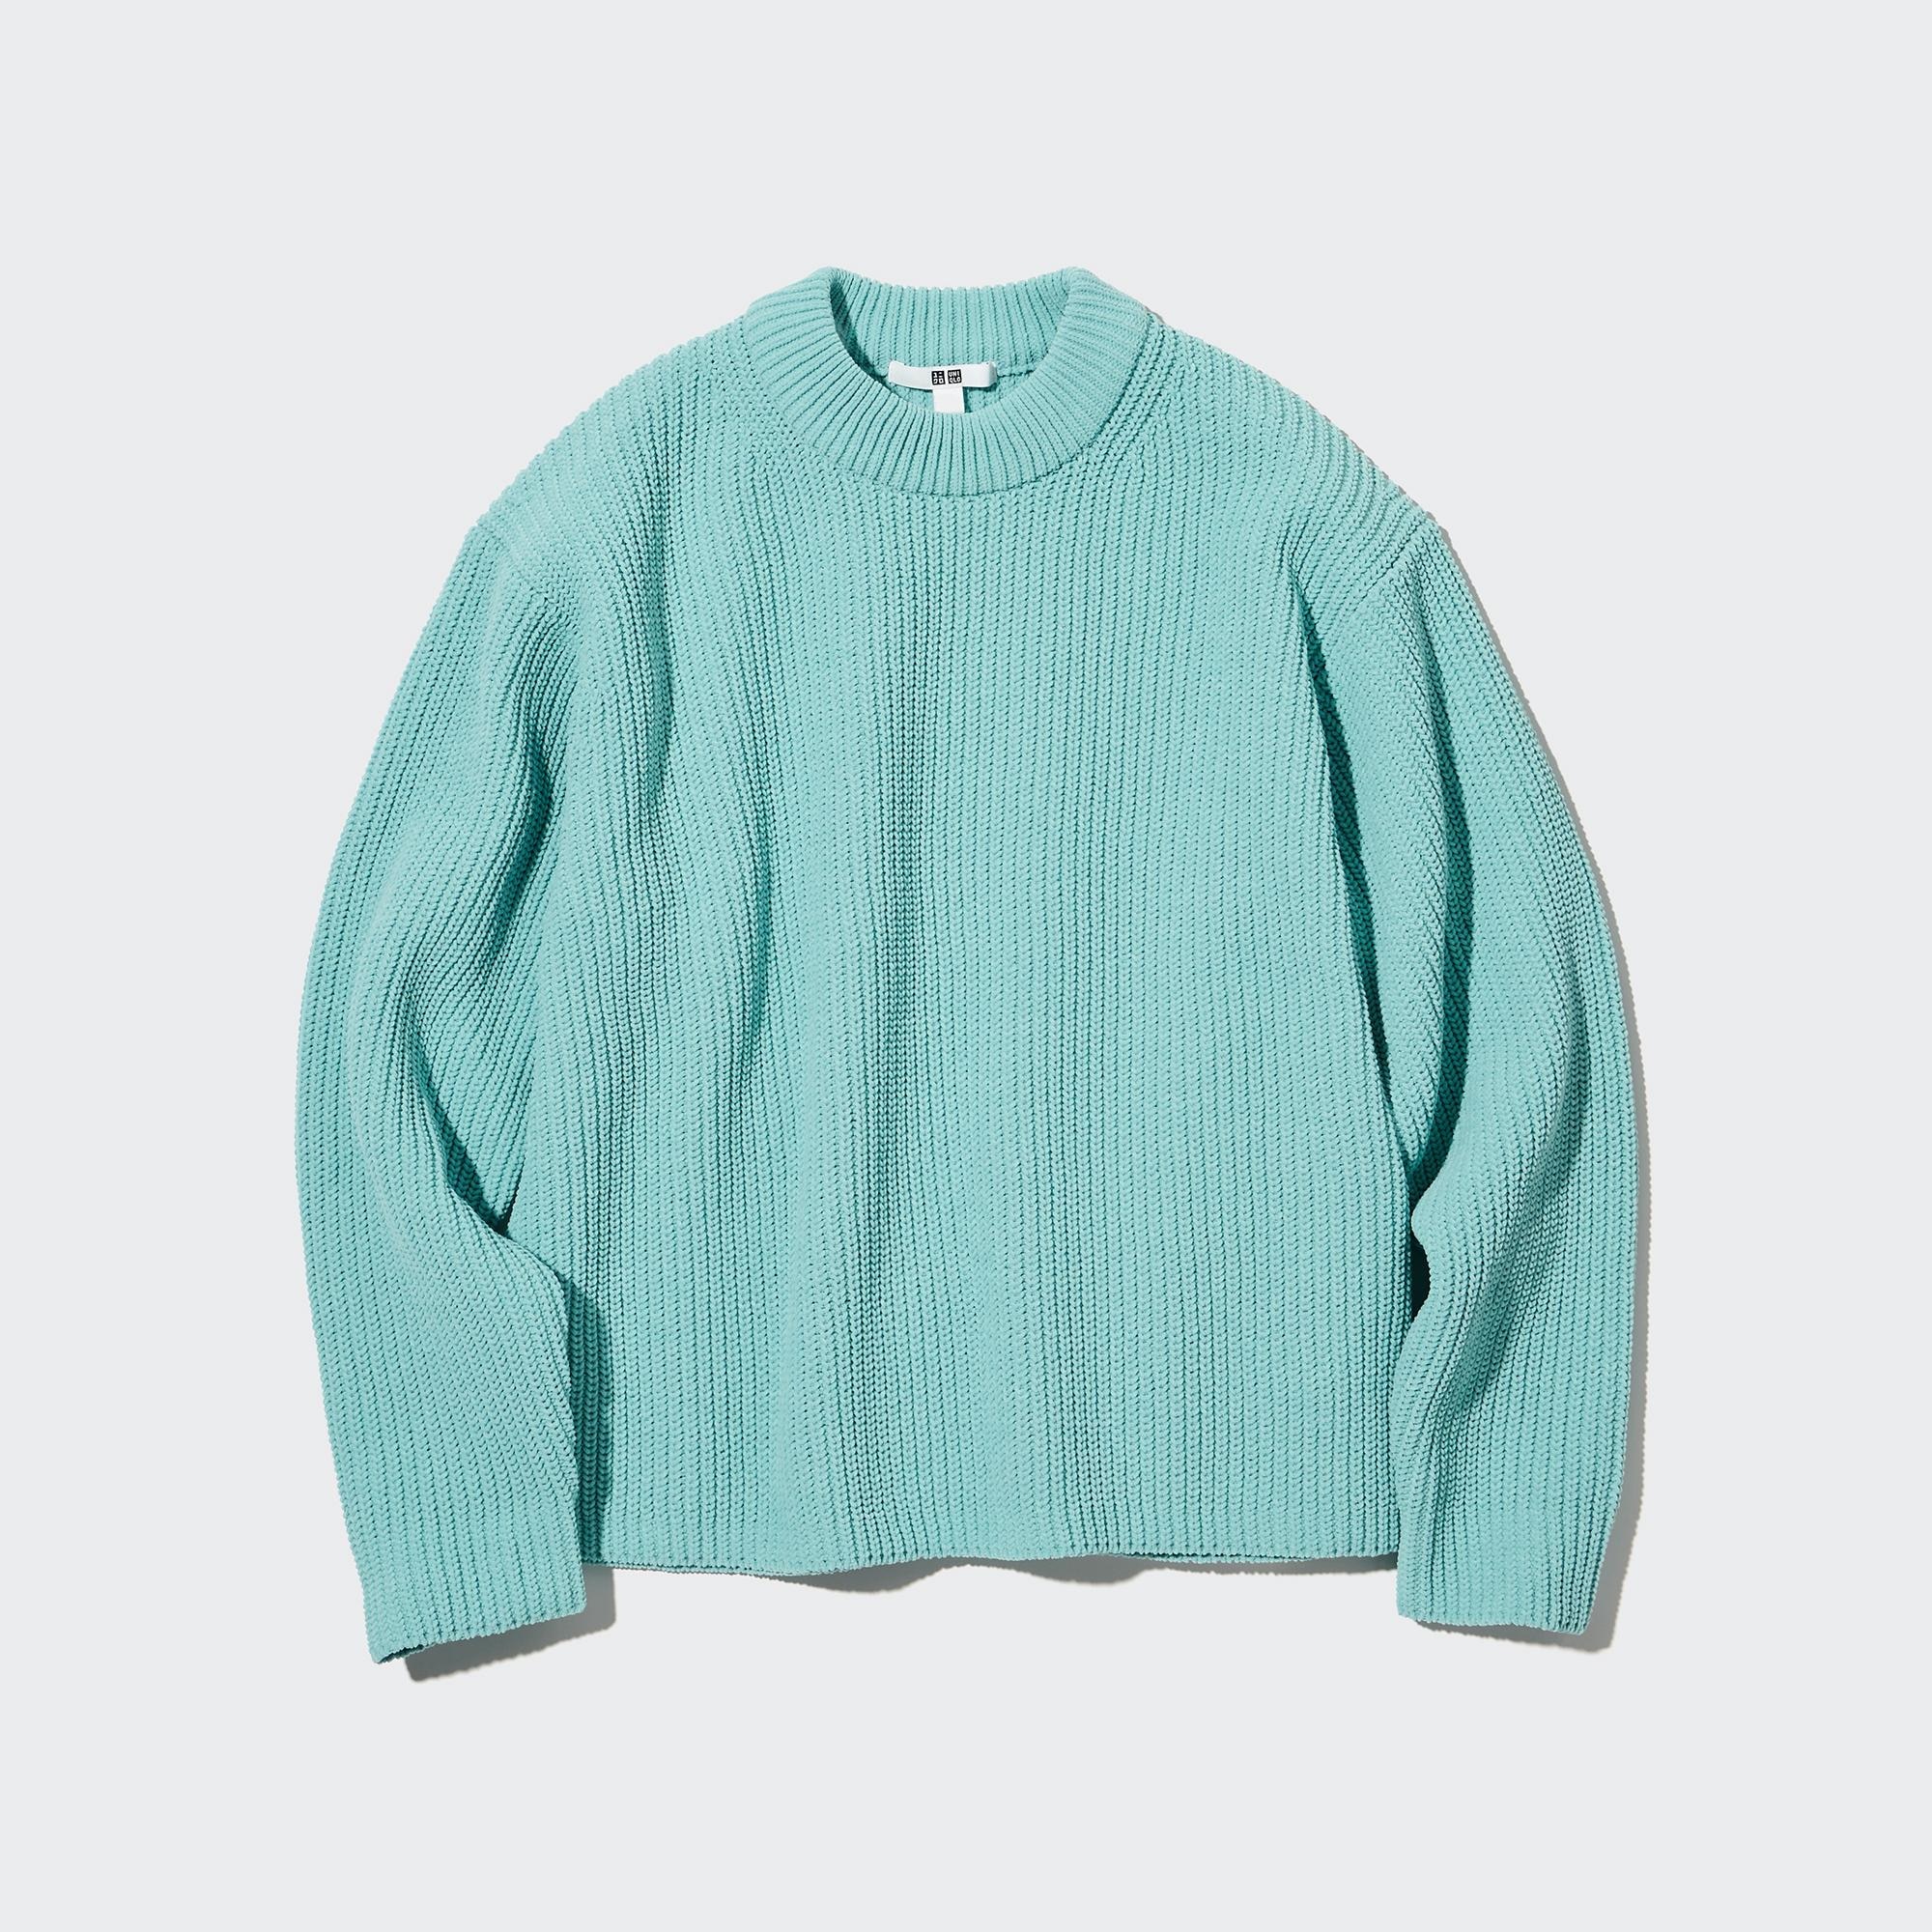 Knitting Pattern: Seamless Mock Neck Sweater, Boxy Cropped Fit